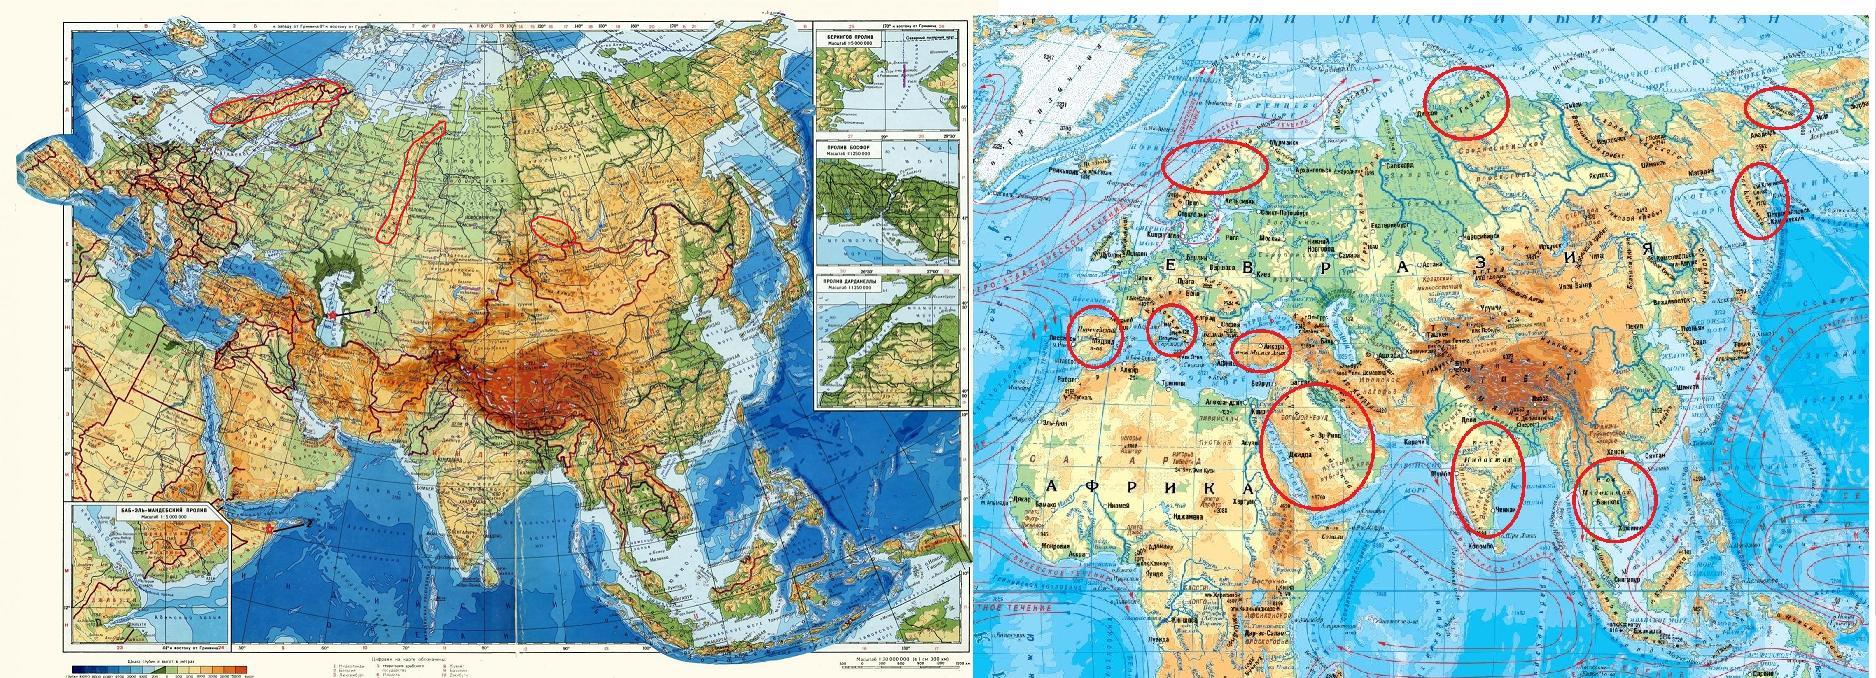 Какие моря атлантического океана омывают евразию. Евразия занимает. Граница Европы и Азии на карте Евразии. Какре место занимает Евразия по площади. Объединенная Евразия.